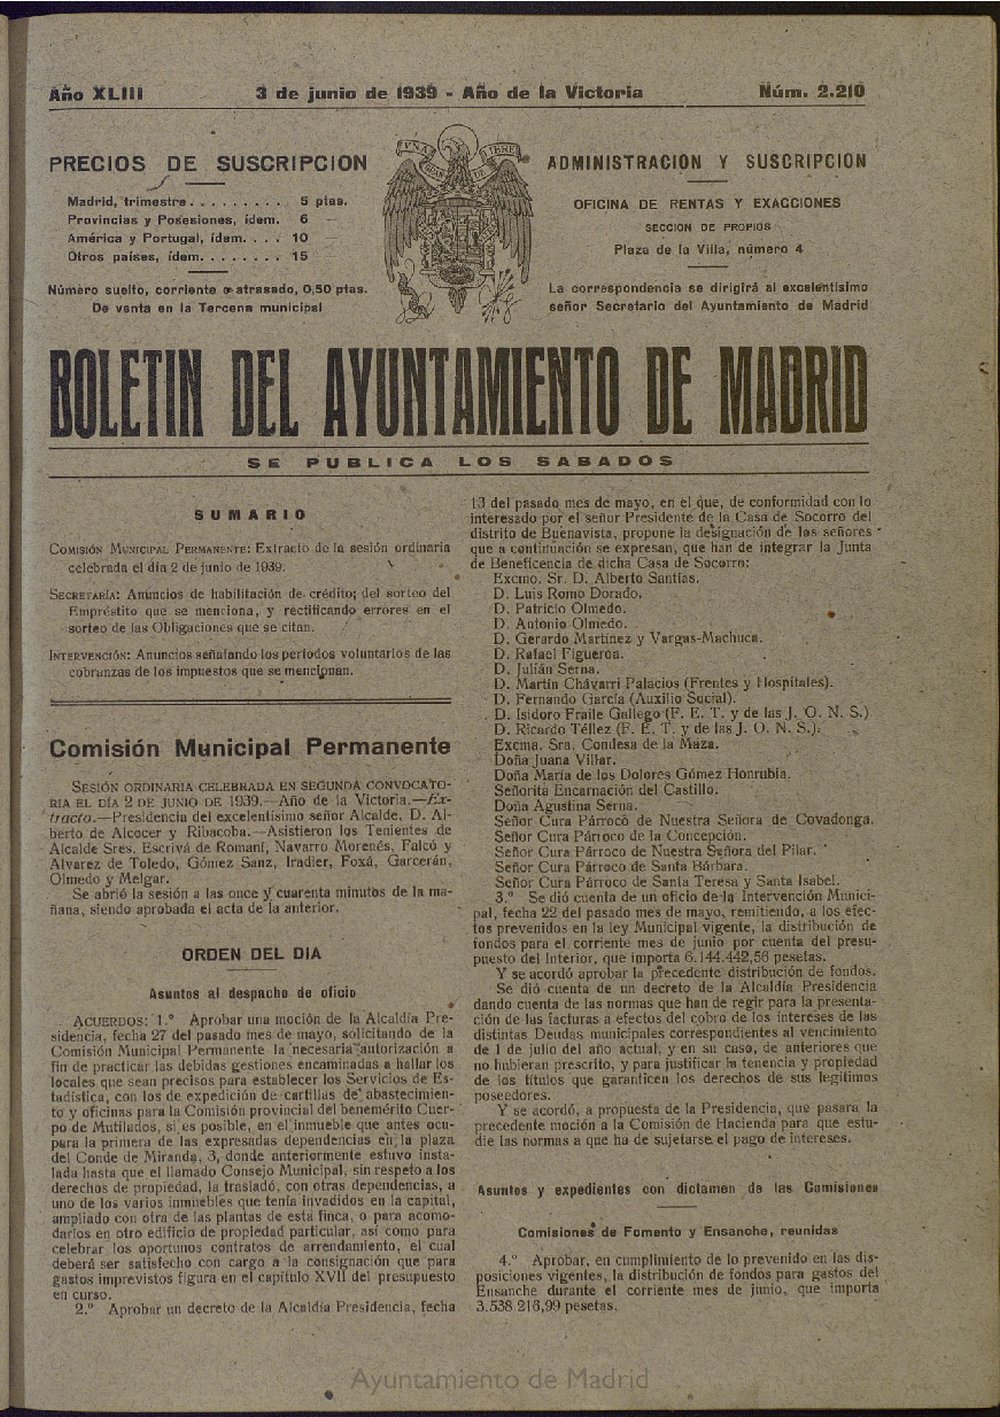 Boletín Oficial del Ayuntamiento de Madrid del 3 de junio de 1939, nº 2210